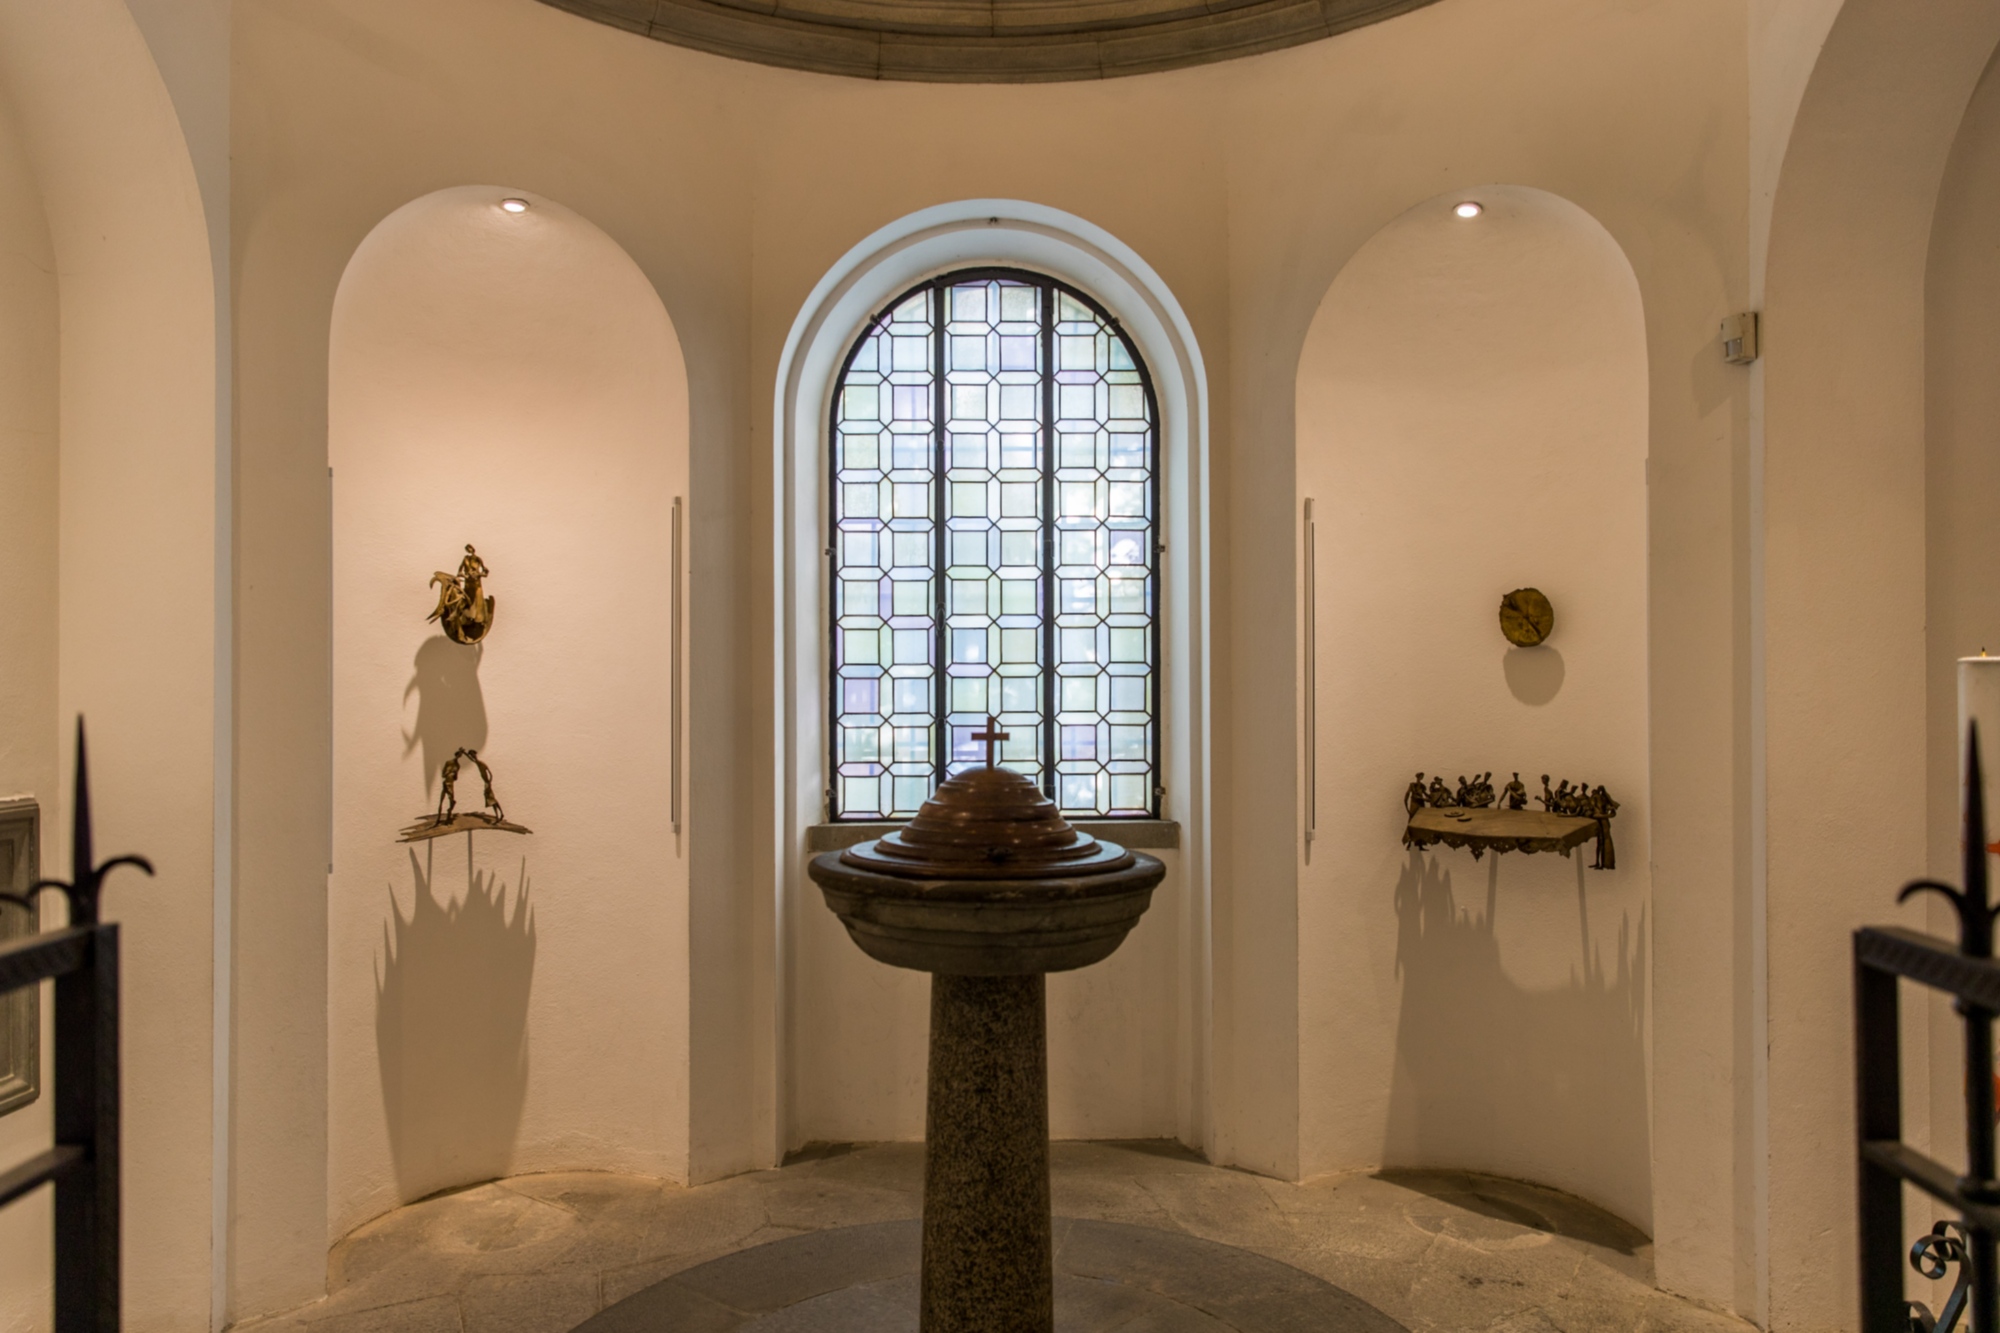 Il fonte battesimale in cui fu battezzato Leonardo e il ciclo scultoreo di Cecco Bonanotte